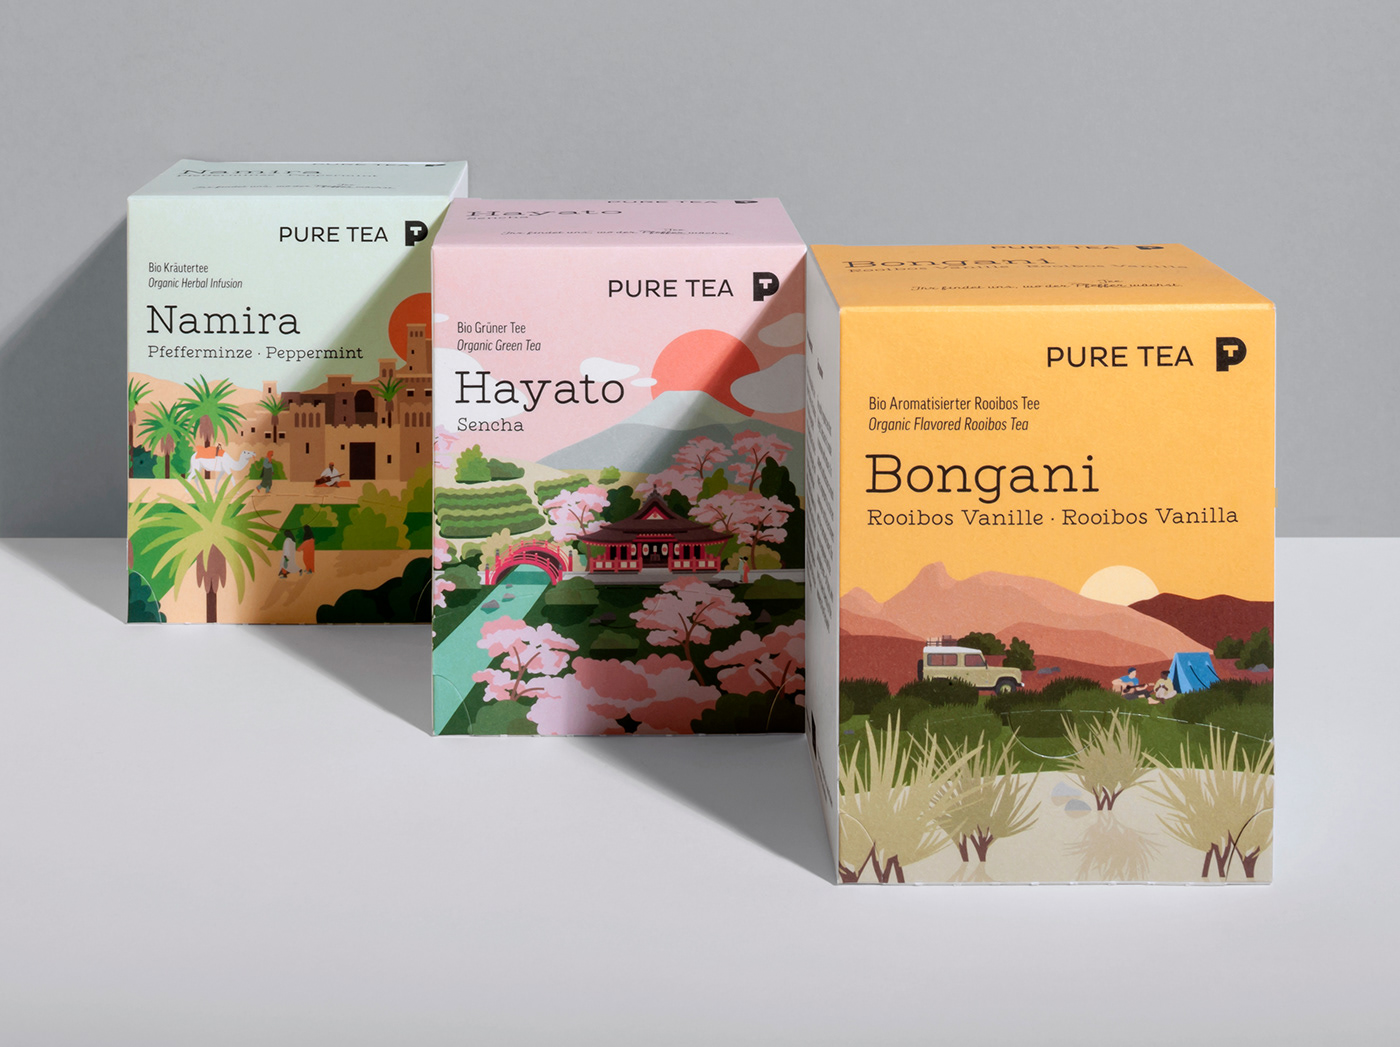 德国有机茶品牌Pure Tea的包装和插画设计